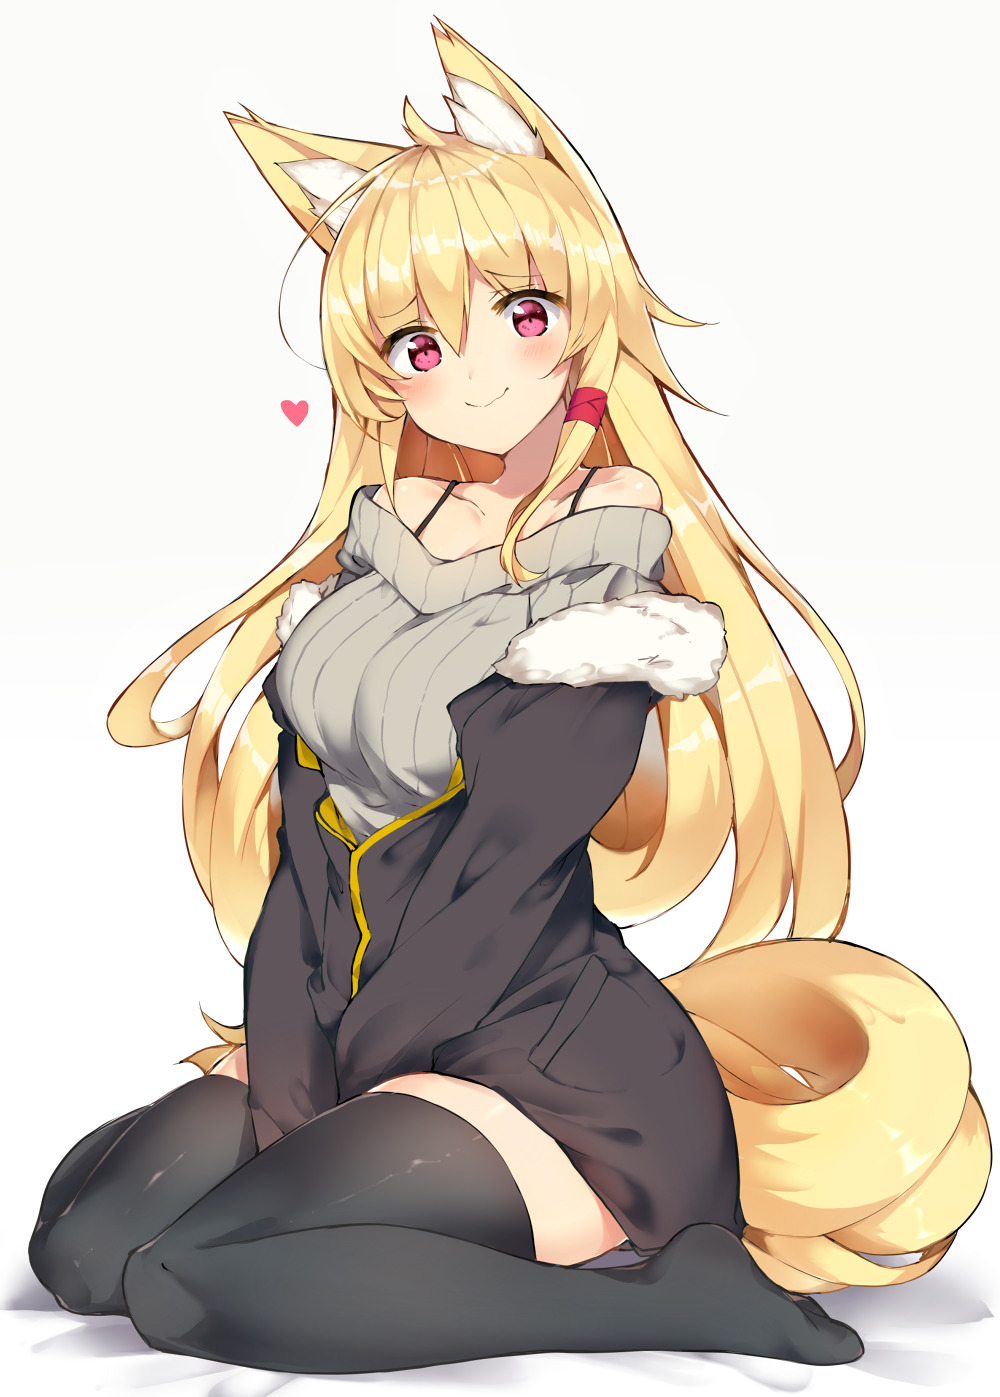 Foxgirl